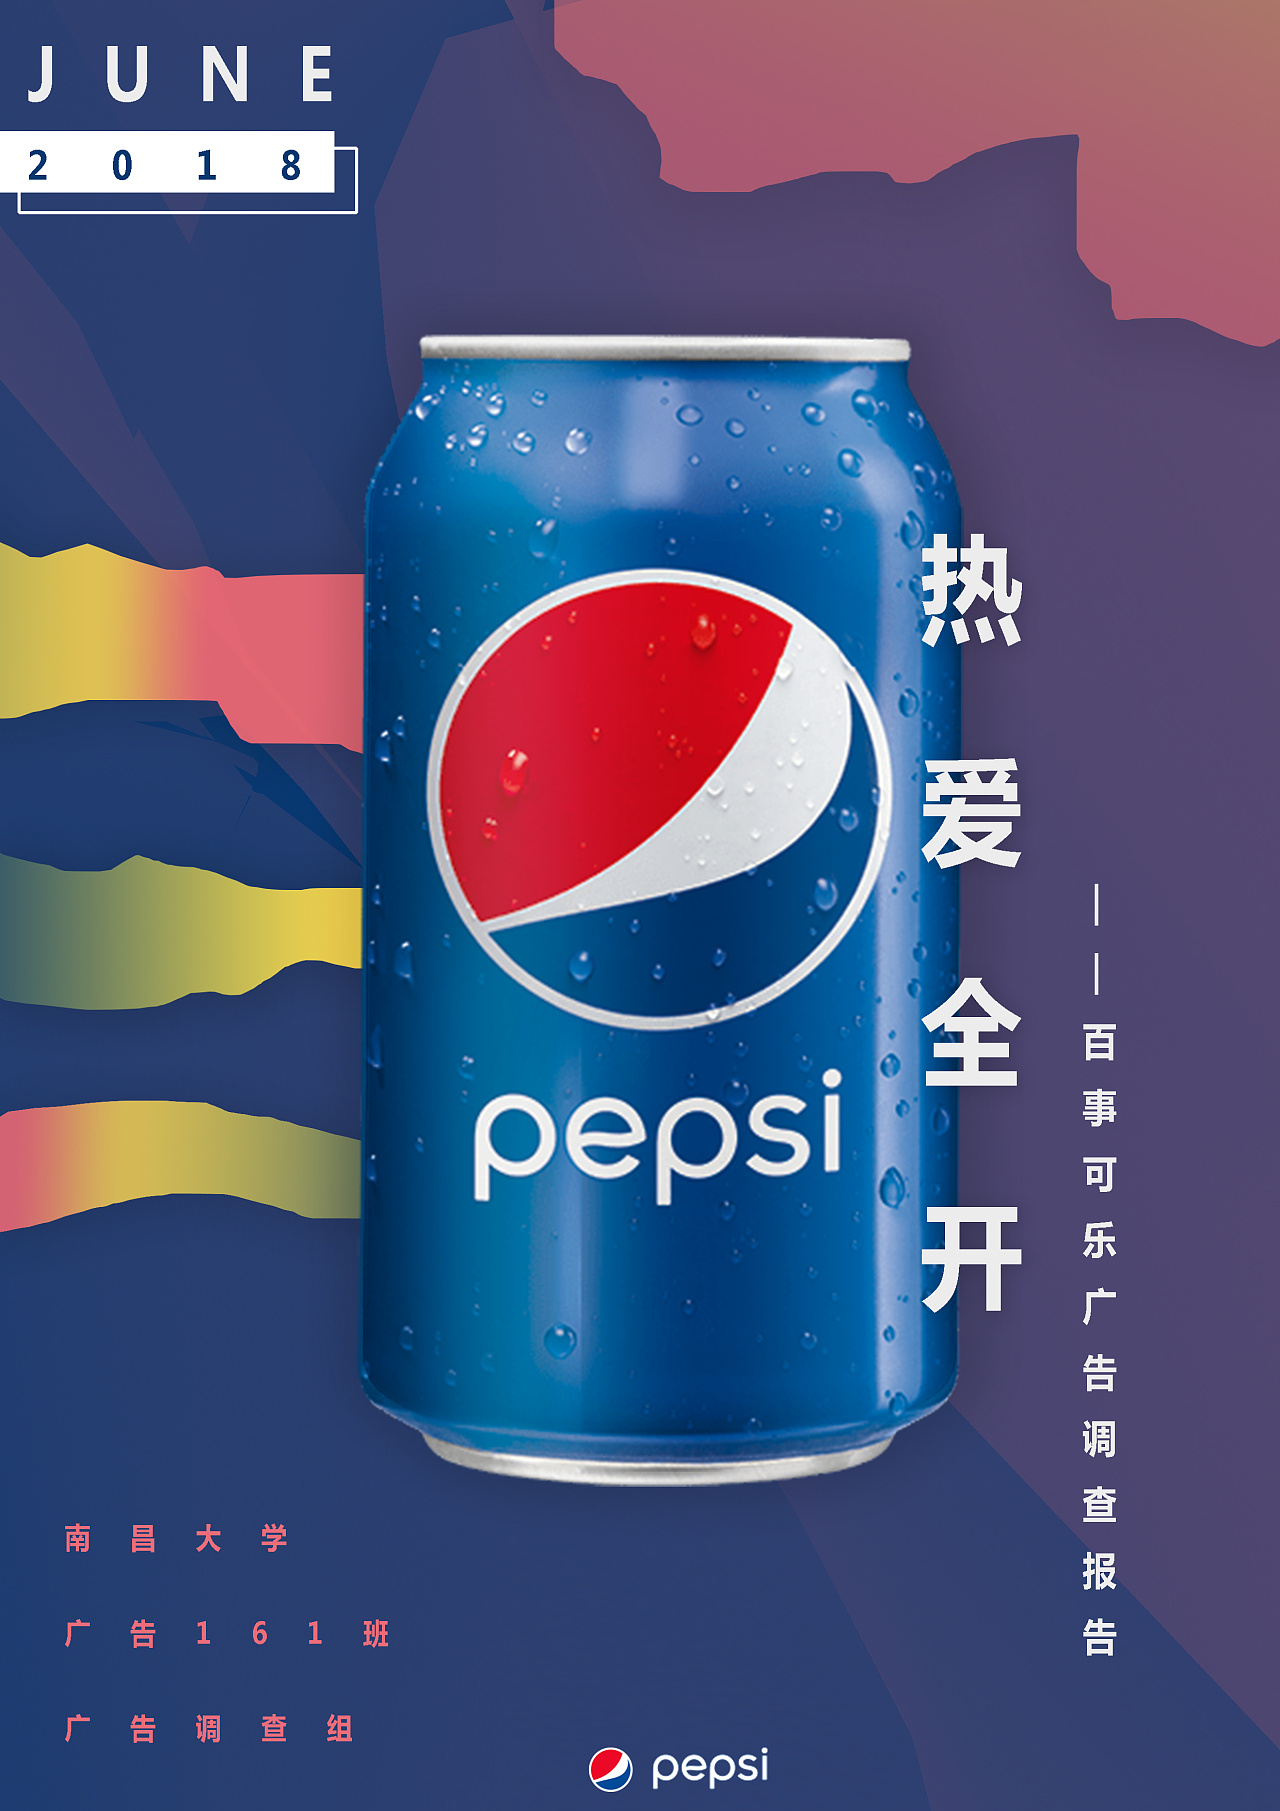 可口可乐的logo设计